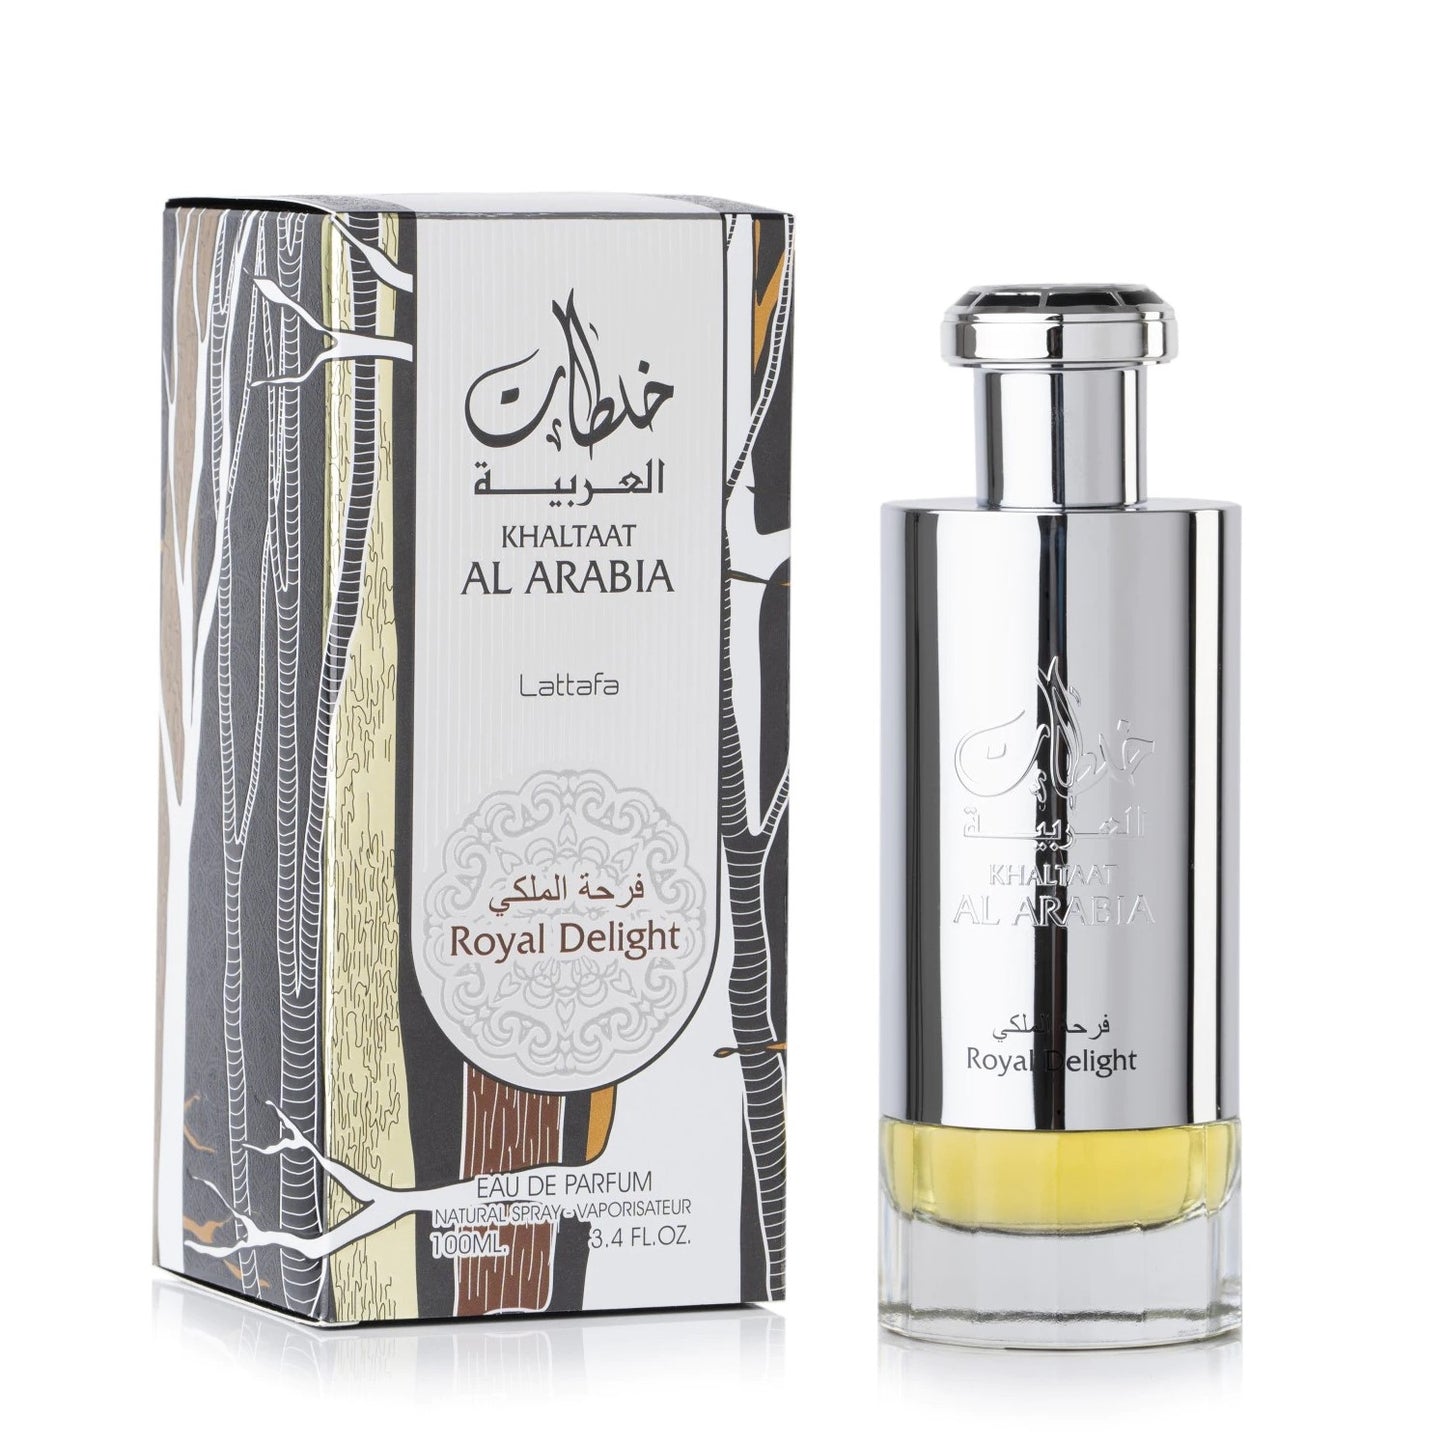 100 ml Eau de Perfume Khalaat Arbia Silver - Mausteinen, Puinen ja Hedelmäinen Tuoksu Naisille